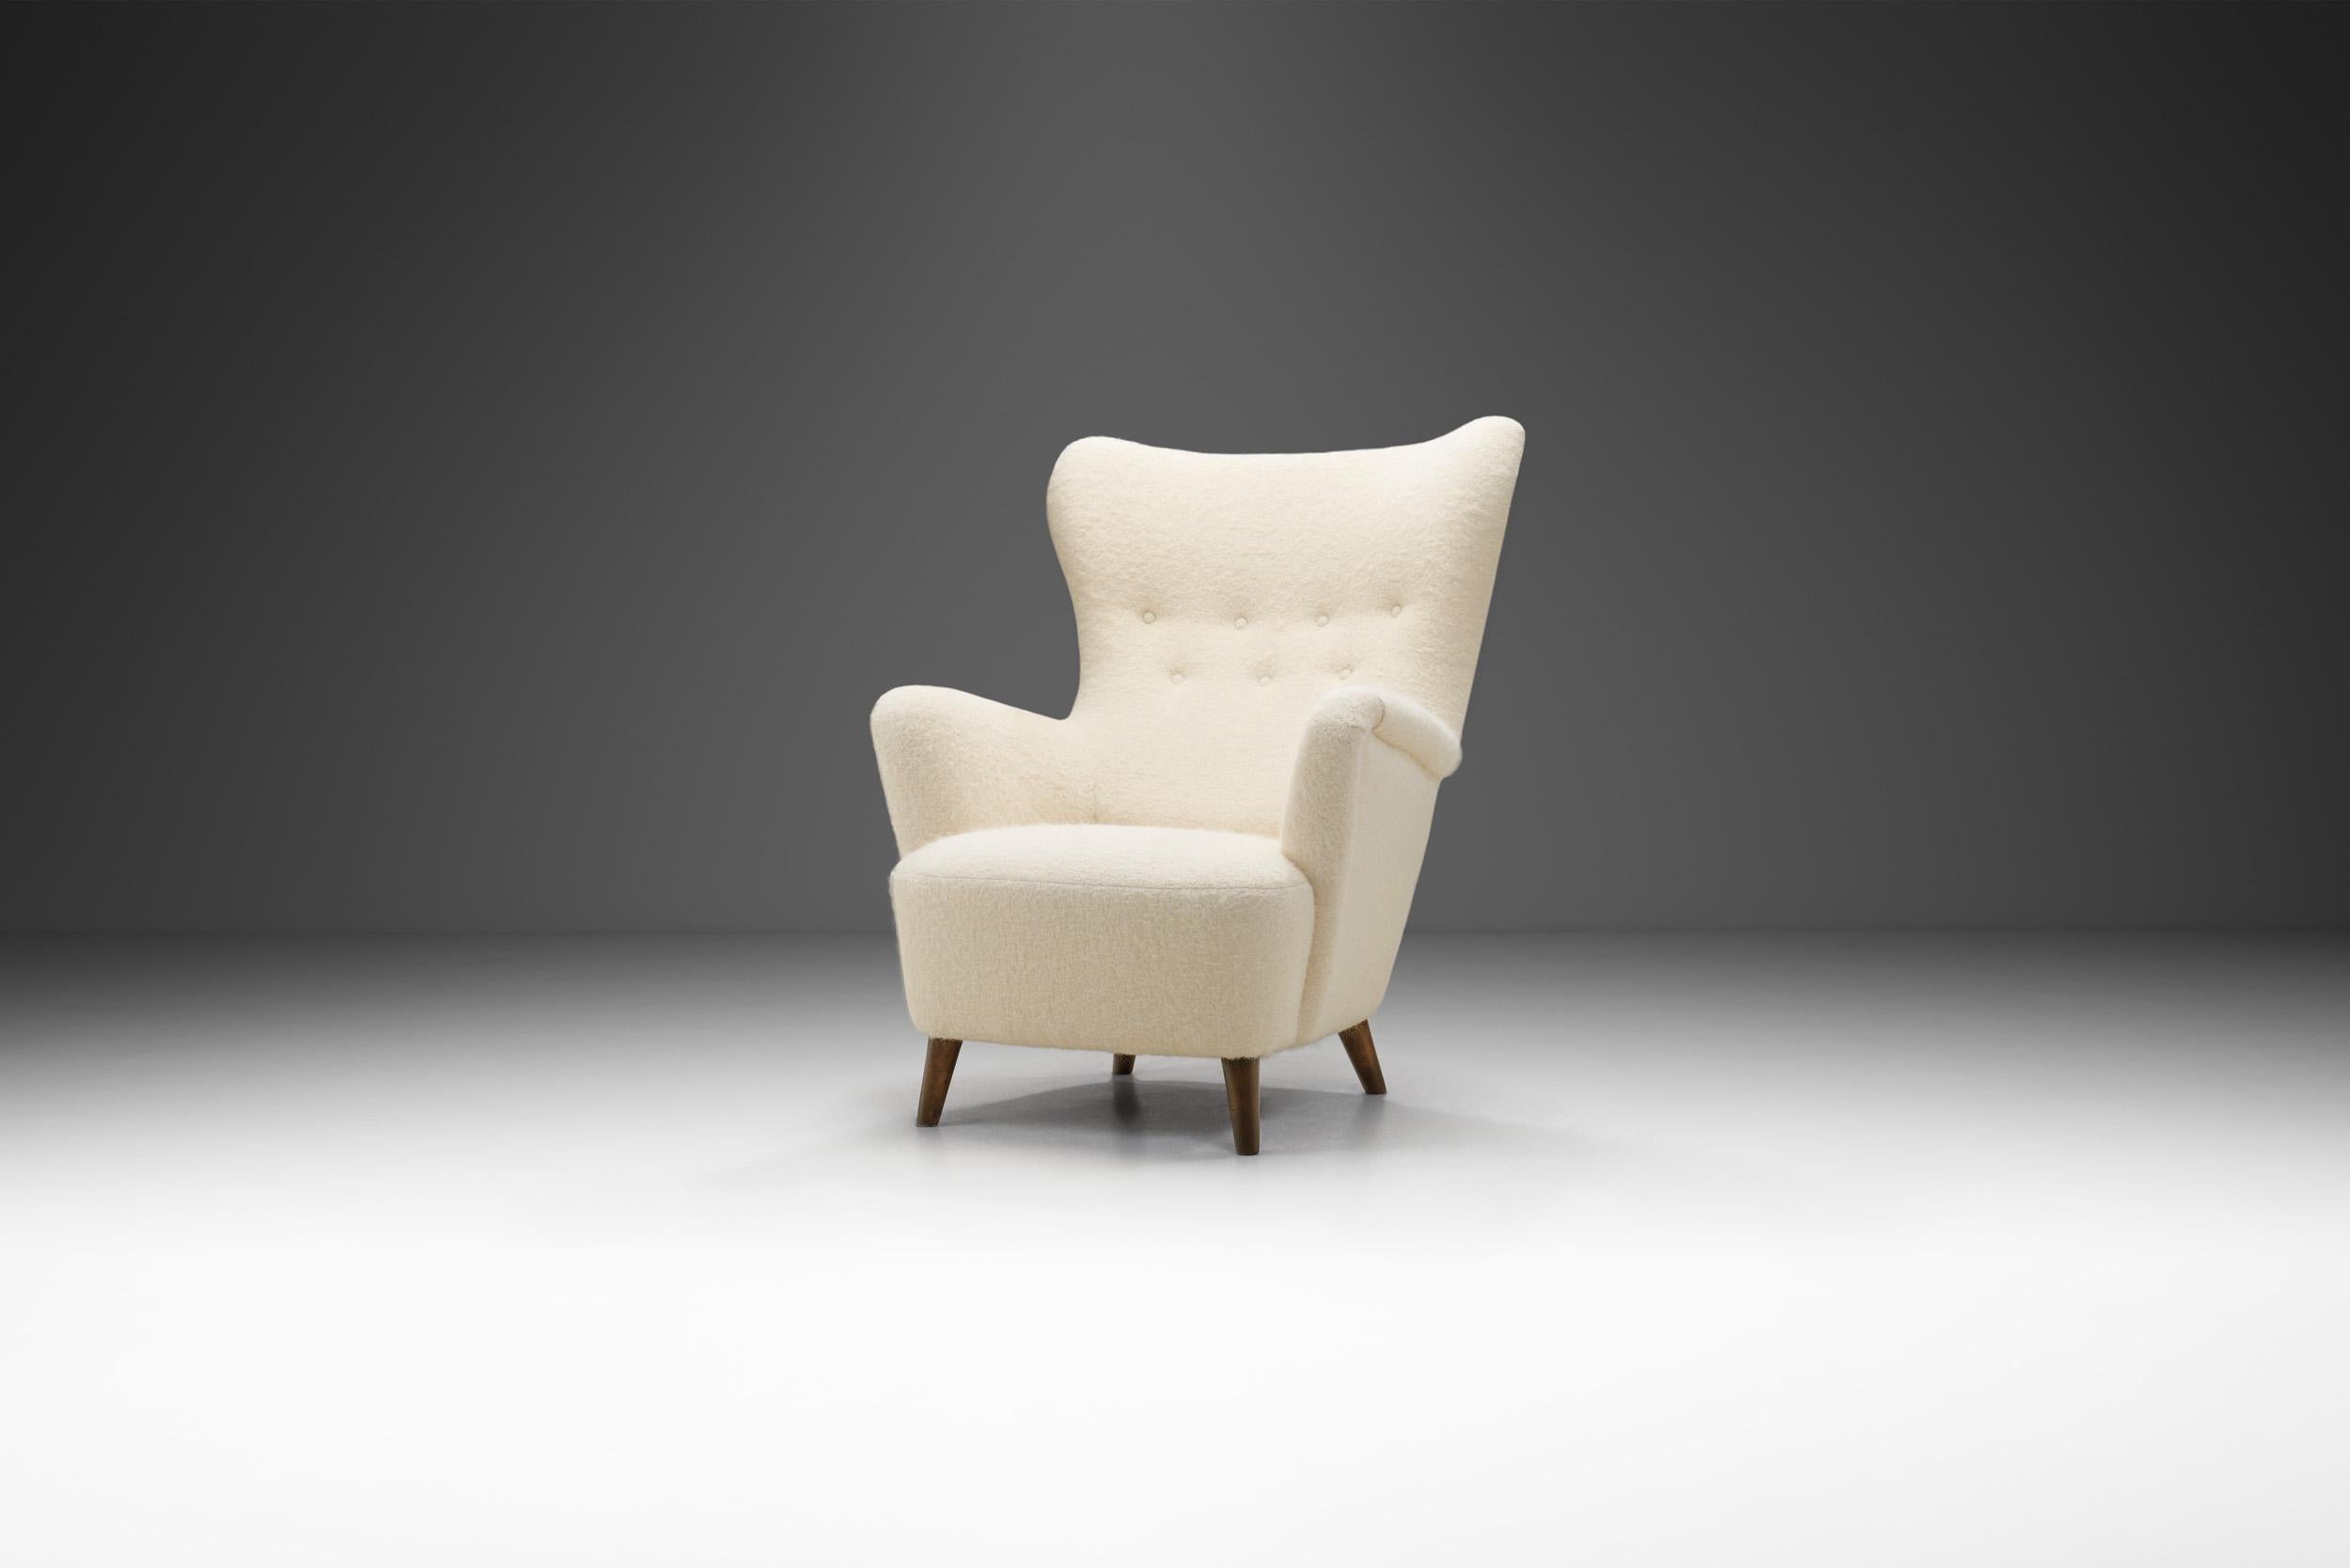 Le Modern Scandinavian Modernism peut être décrit visuellement par ce magnifique fauteuil : épuré, organique et intemporel. Ces attributs sont satisfaits par des matériaux de haute qualité et le célèbre savoir-faire des ébénistes scandinaves.

Le